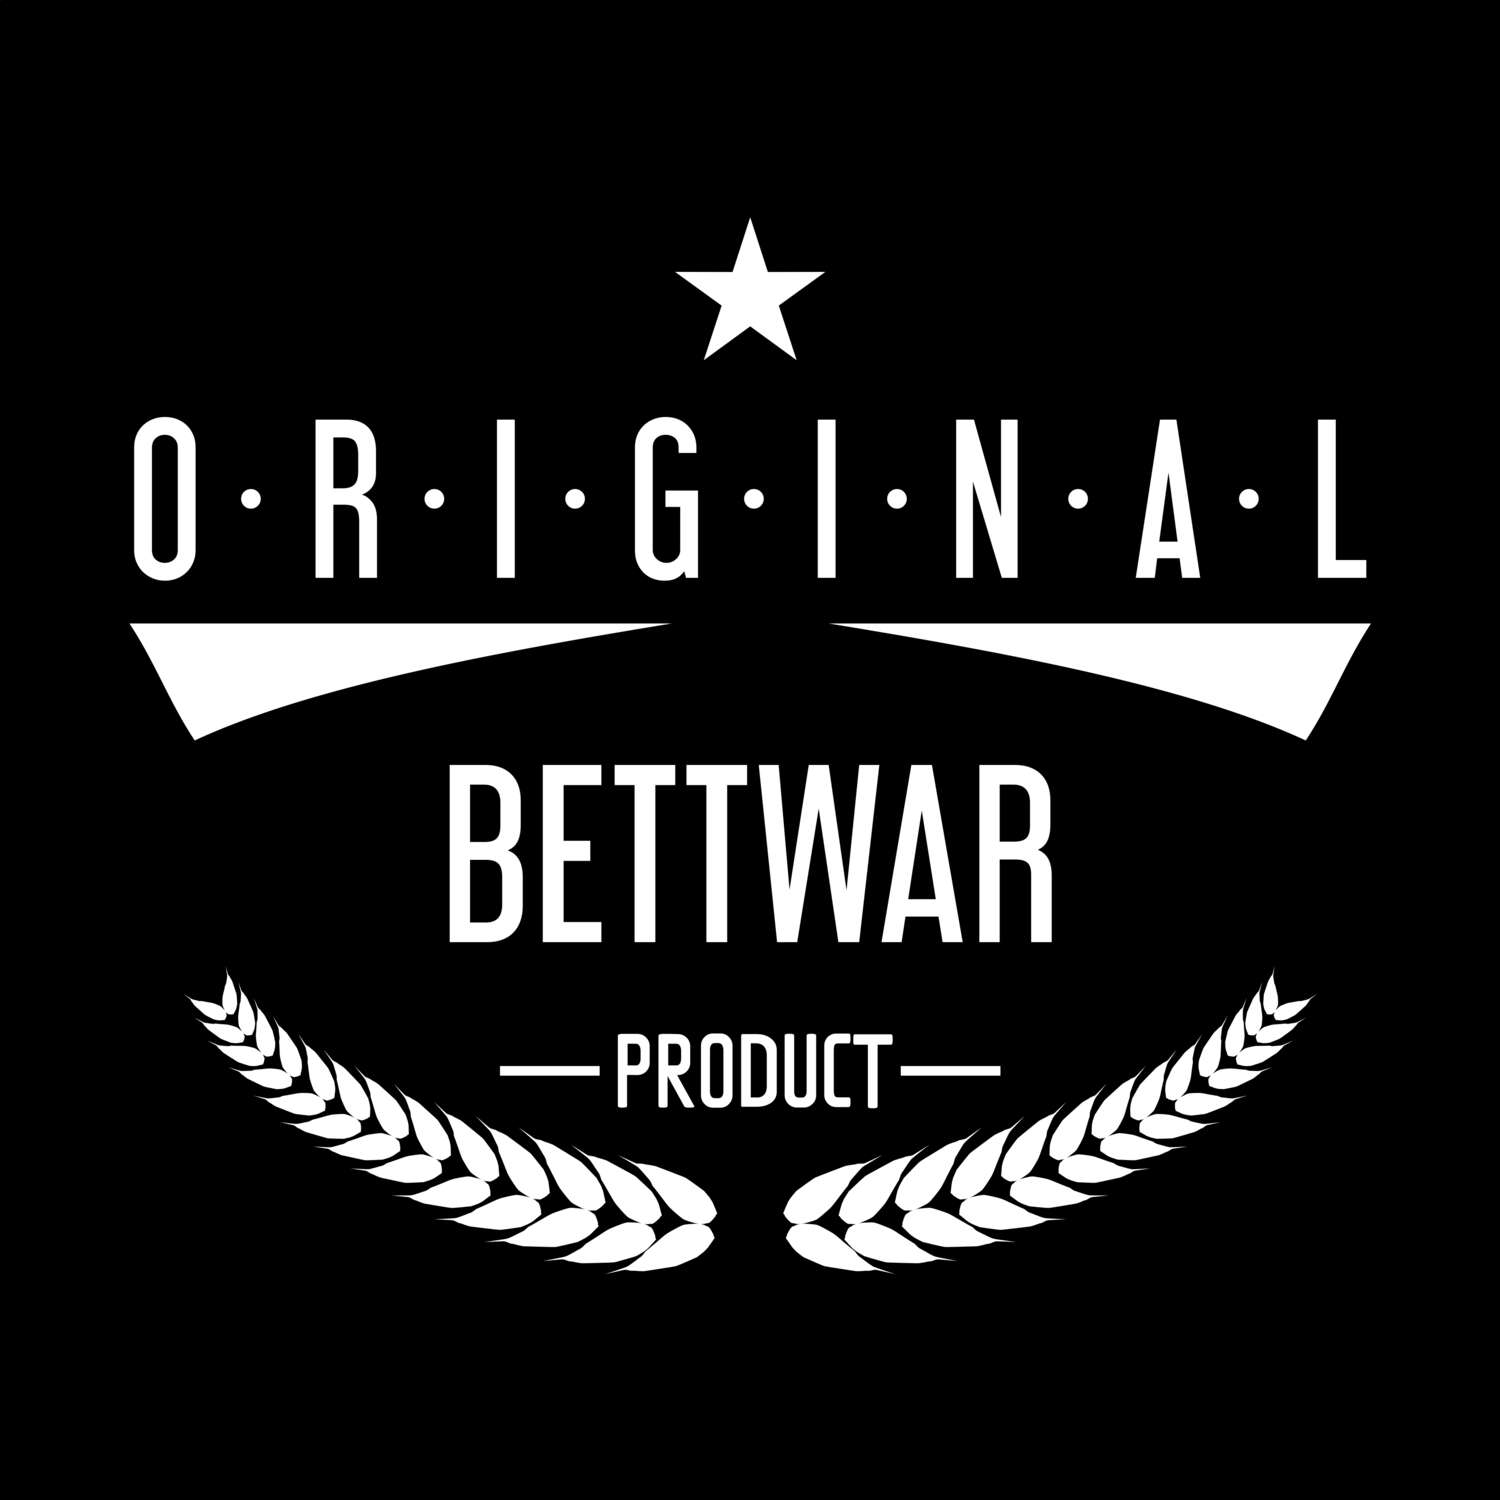 Bettwar T-Shirt »Original Product«